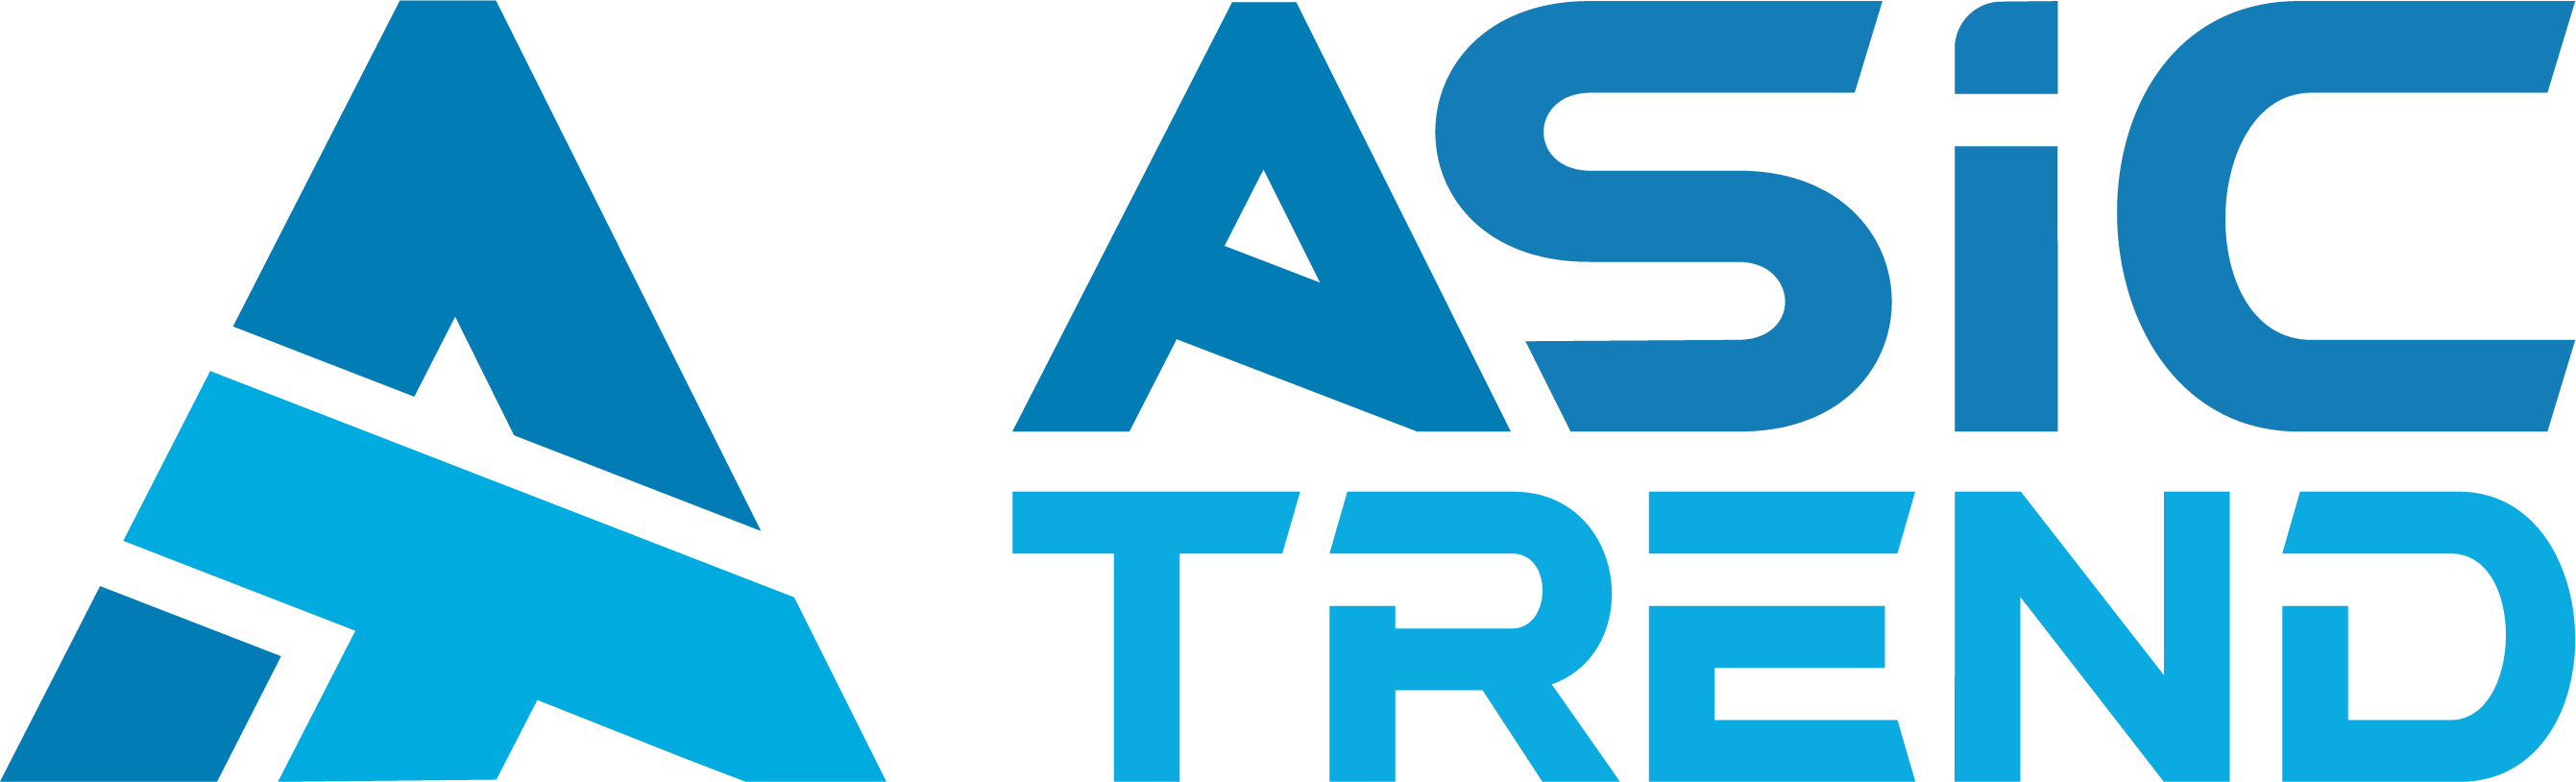 AsicTrend - магазин оборудования для майнинга криптовалют